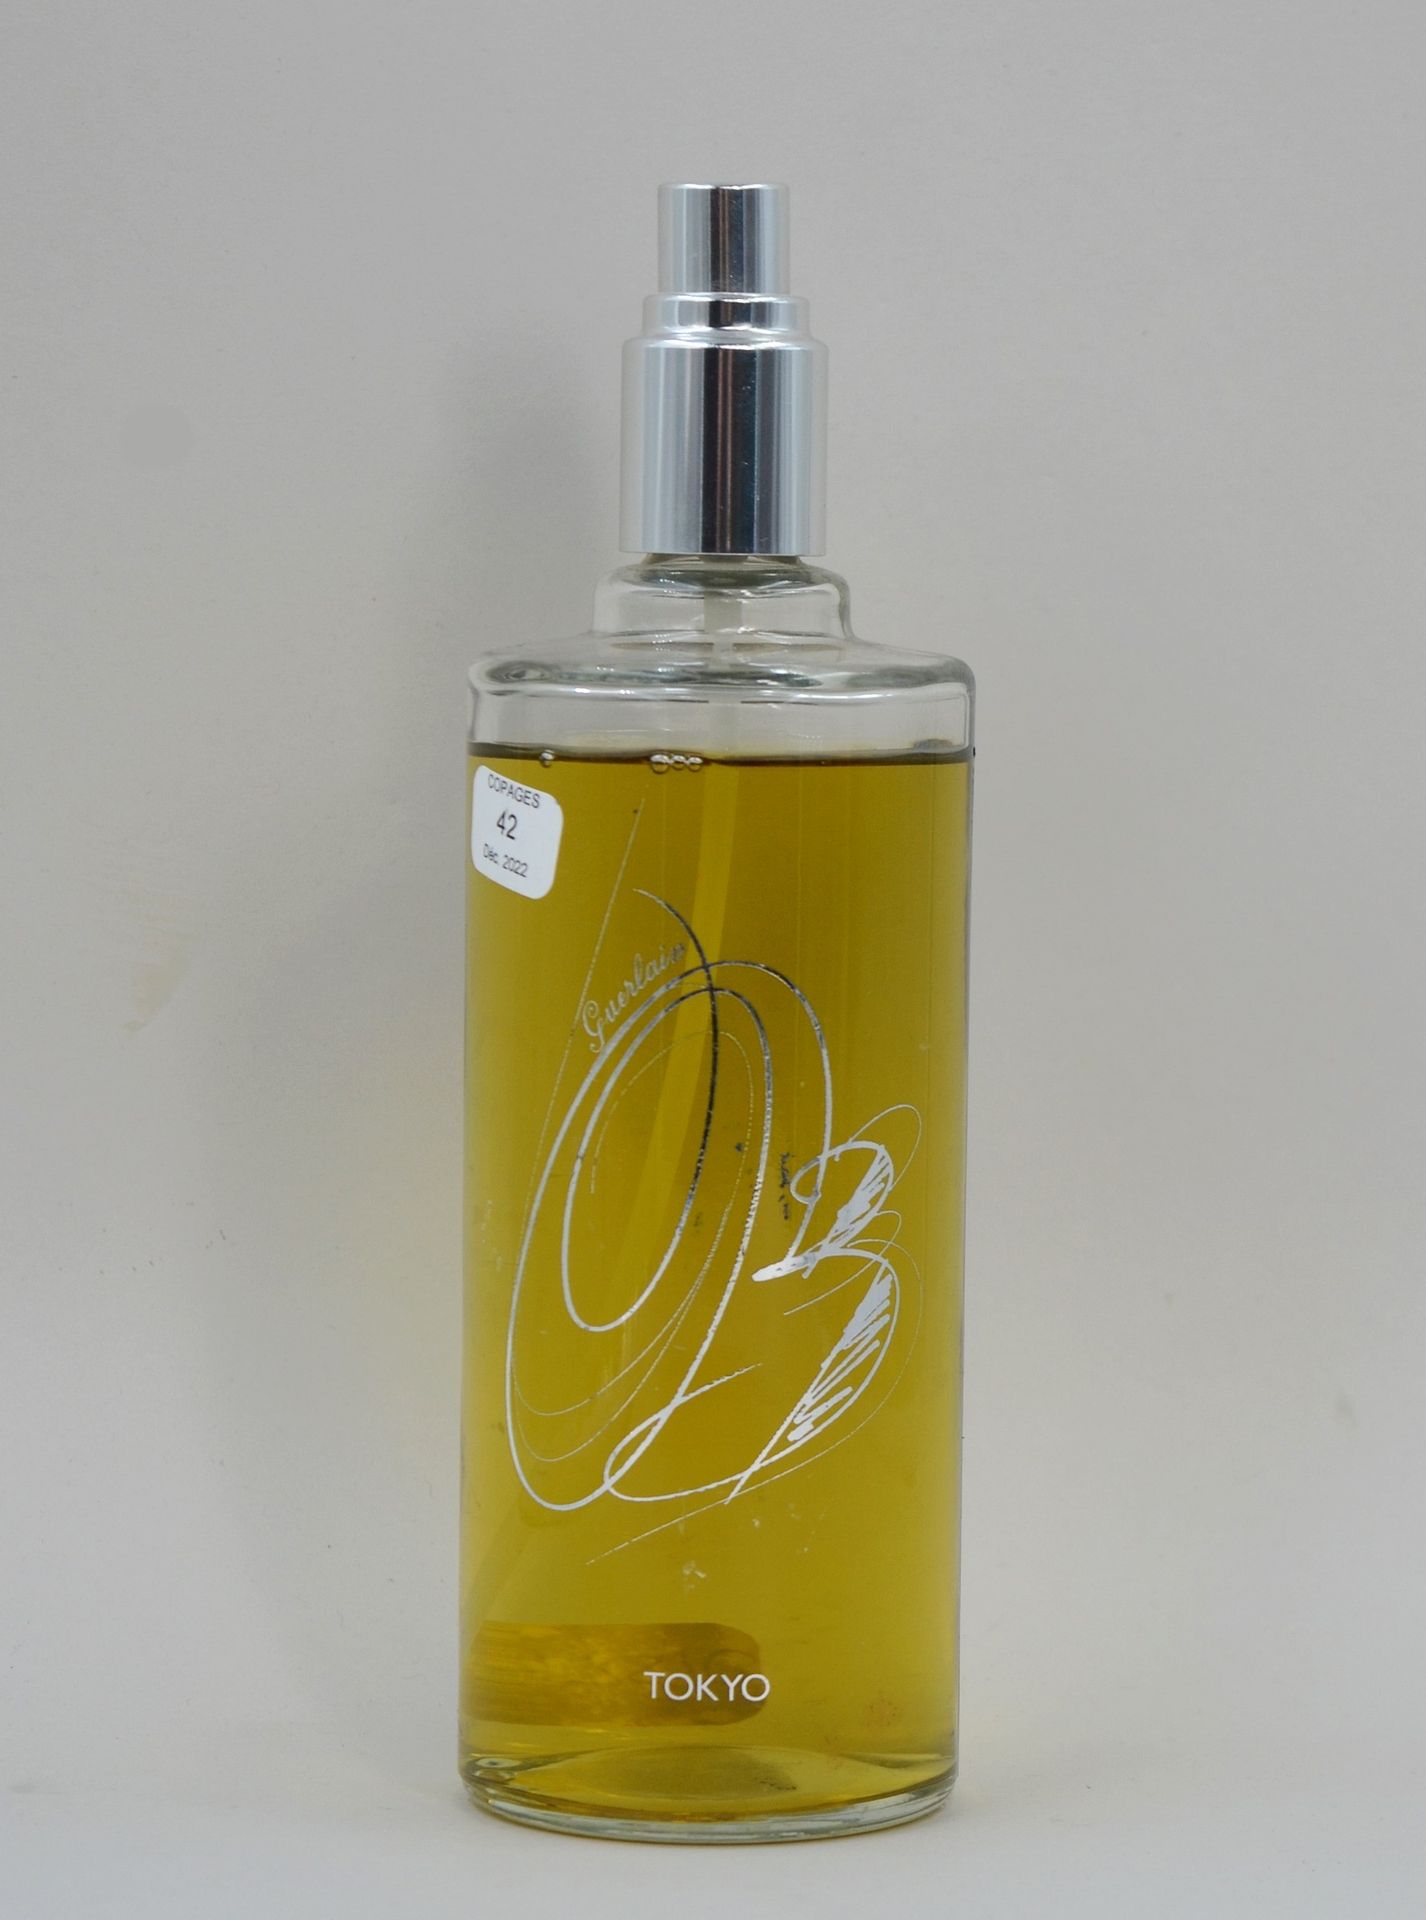 Null GUERLAIN "东京 "瓶

瓶子的形状，装饰和标题。限量系列在娇兰精品店独家销售。可补充的喷雾瓶，容量为245毫升。